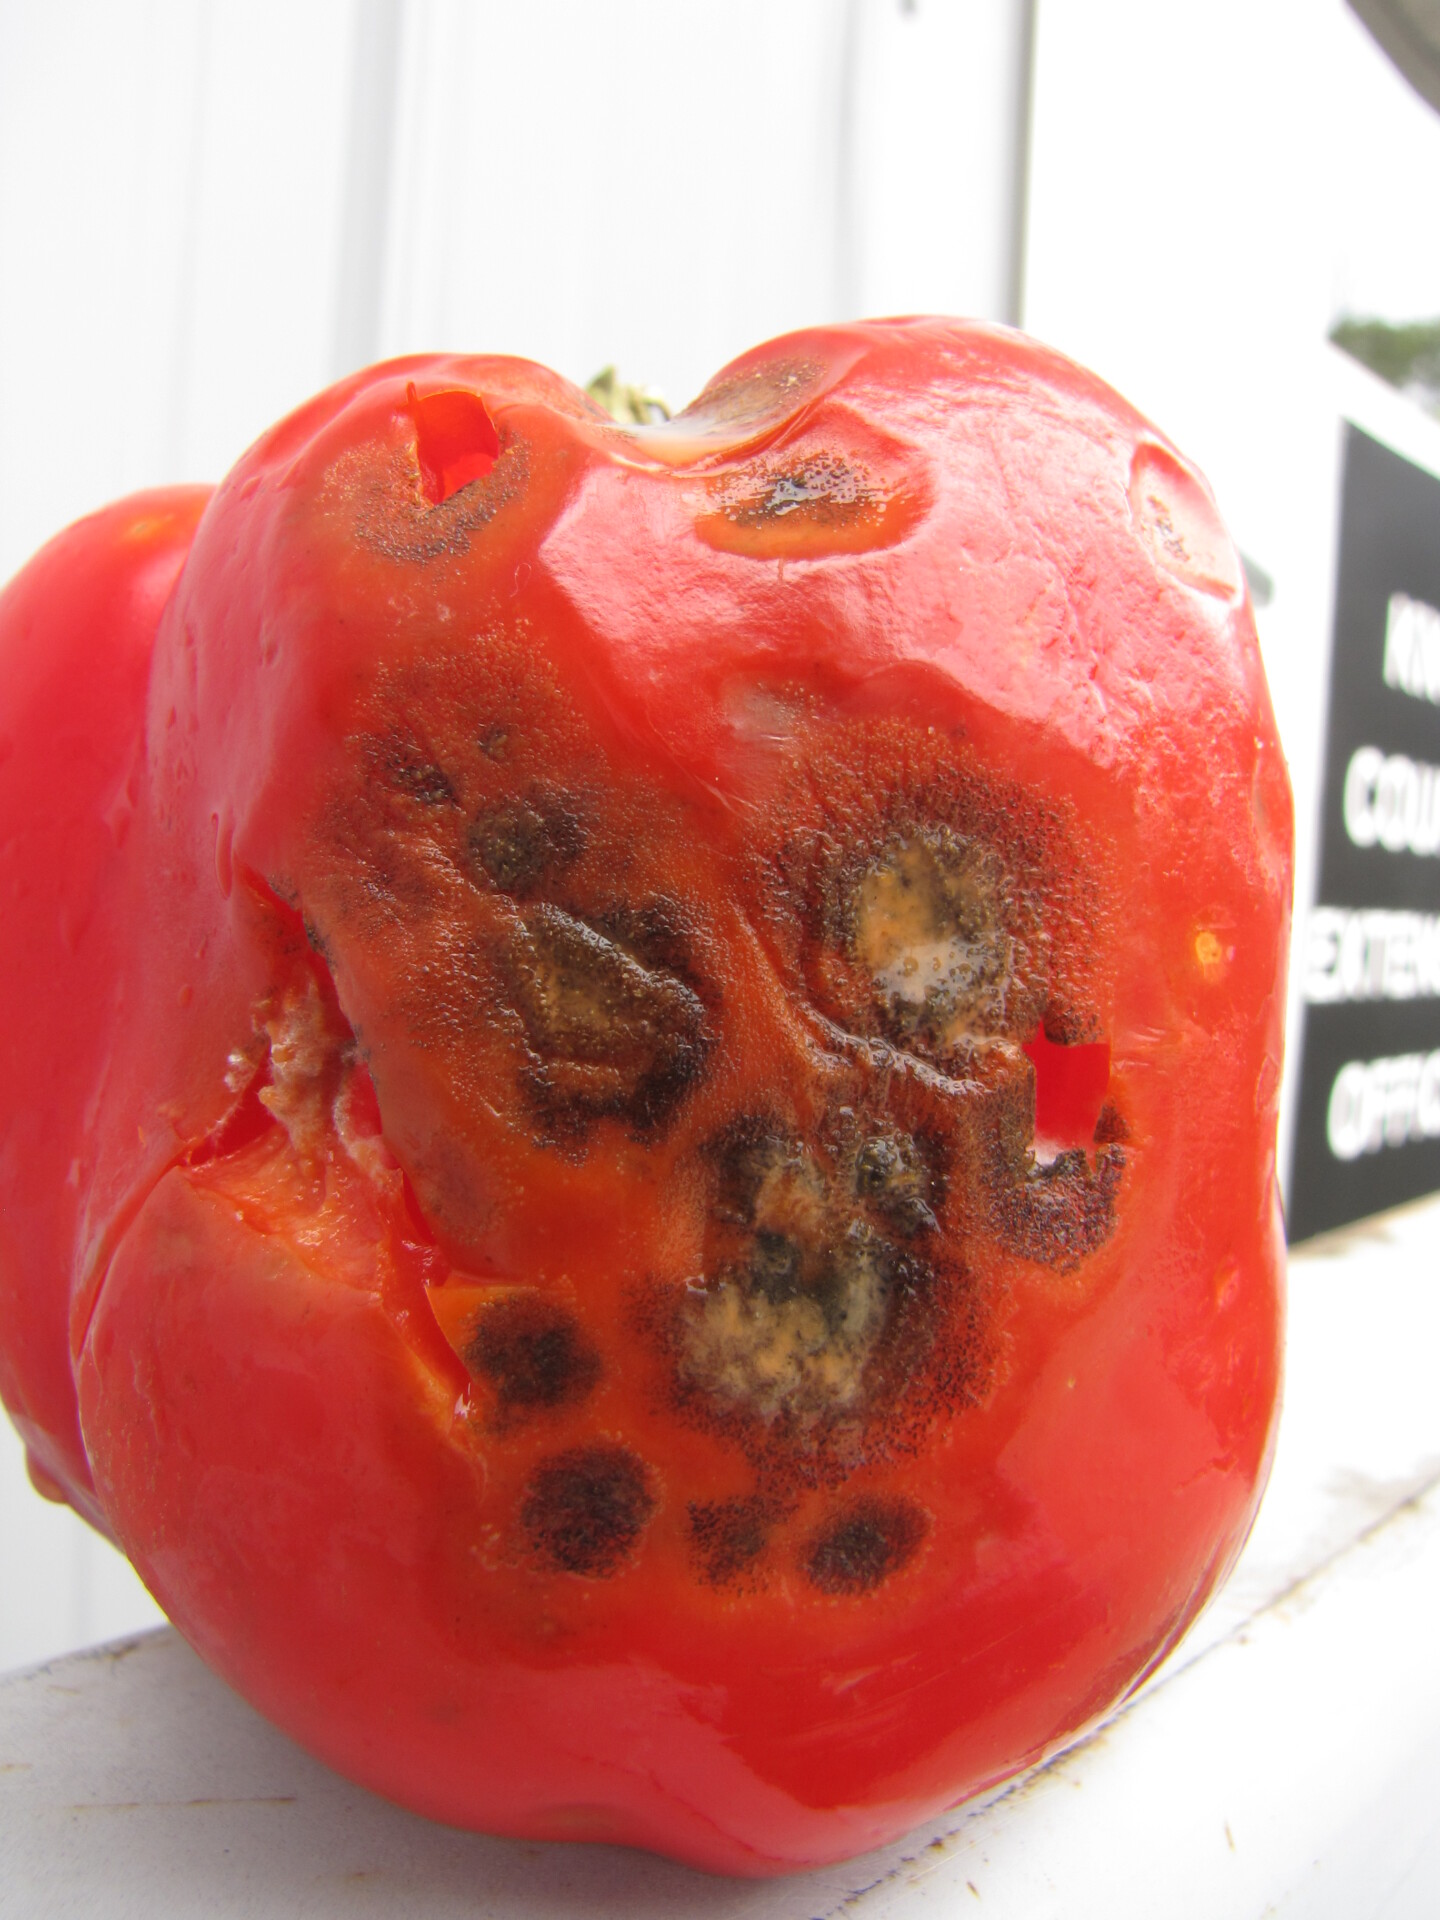 Anthracnose on pepper fruit.